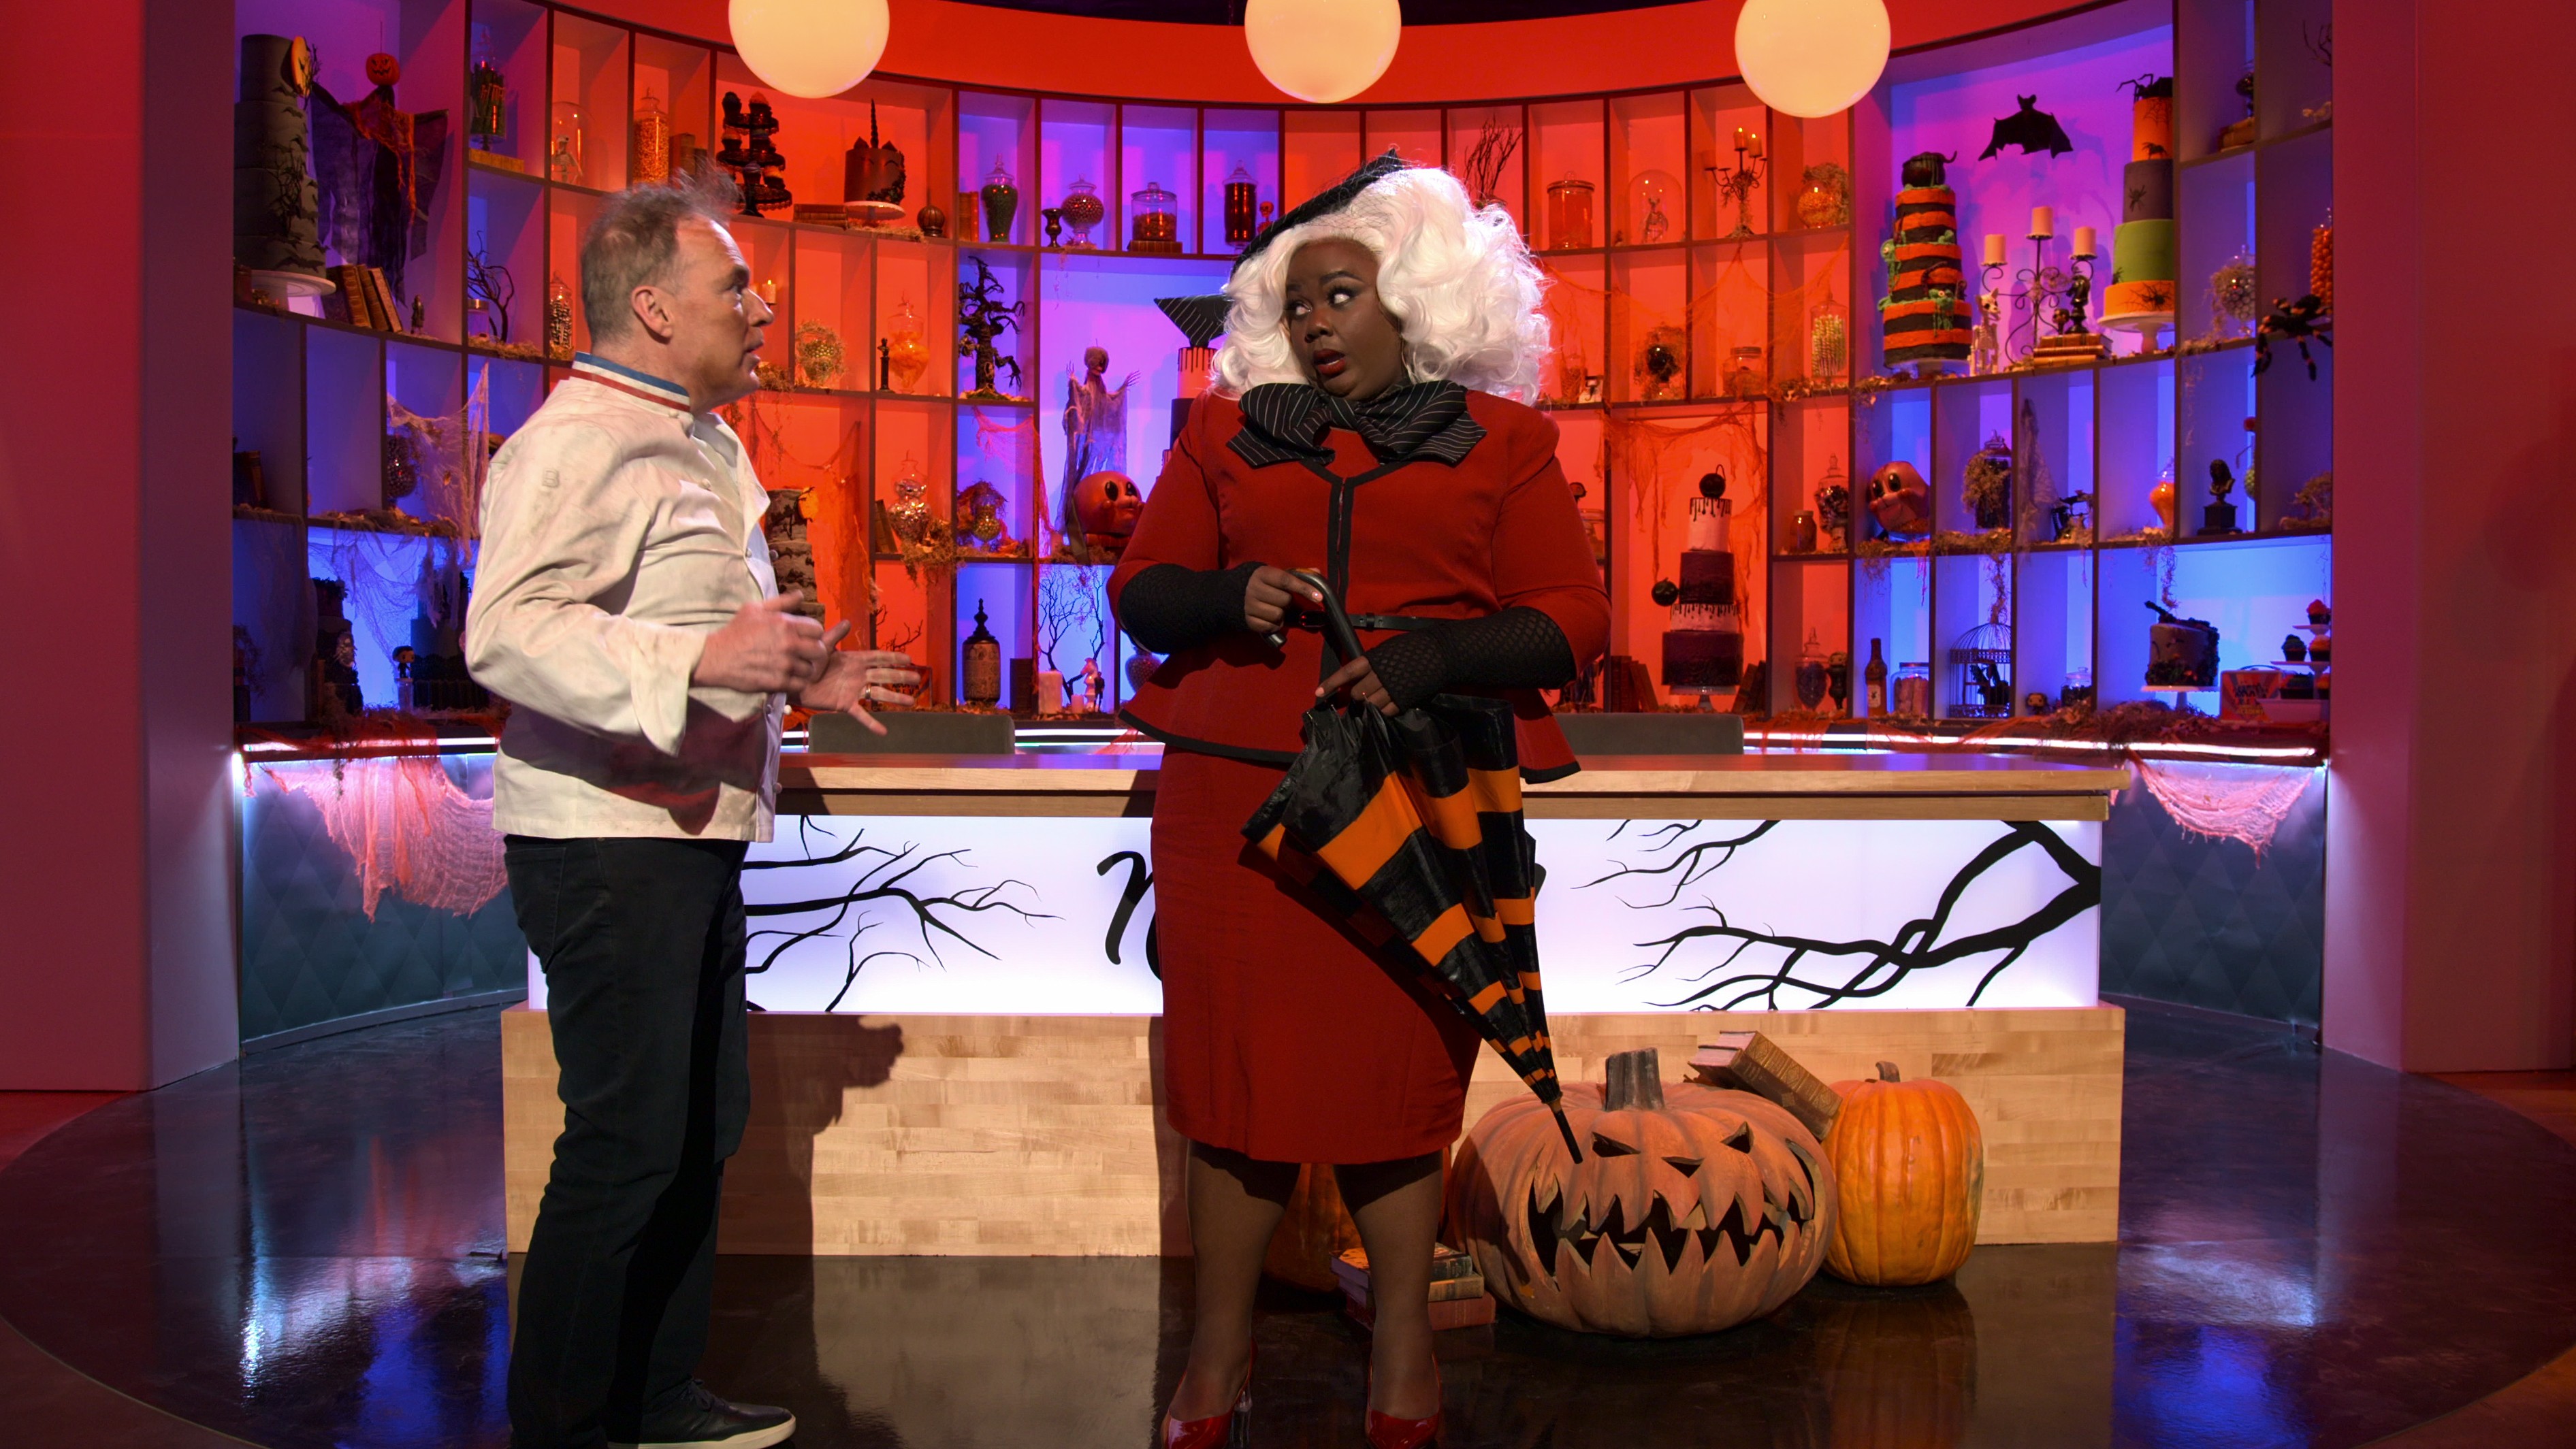 Nesta nova temporada, os participantes desfilam fantasias temáticas de Halloween (Foto: Reprodução/Netflix)